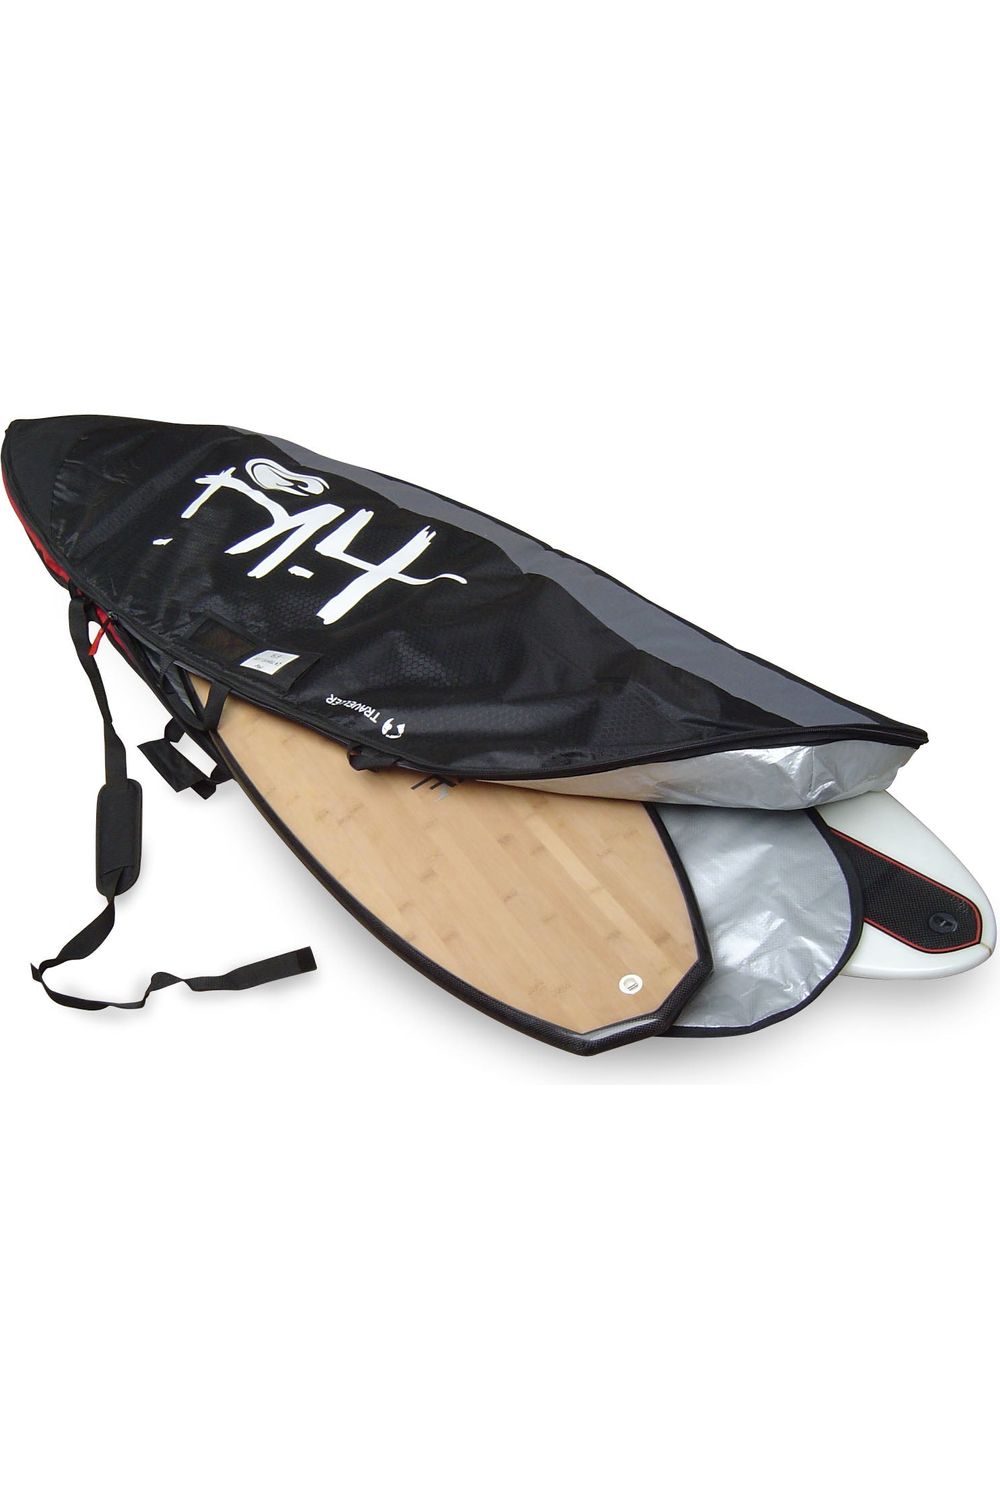 6'9 Travel Fish Surfboard Bag MKII